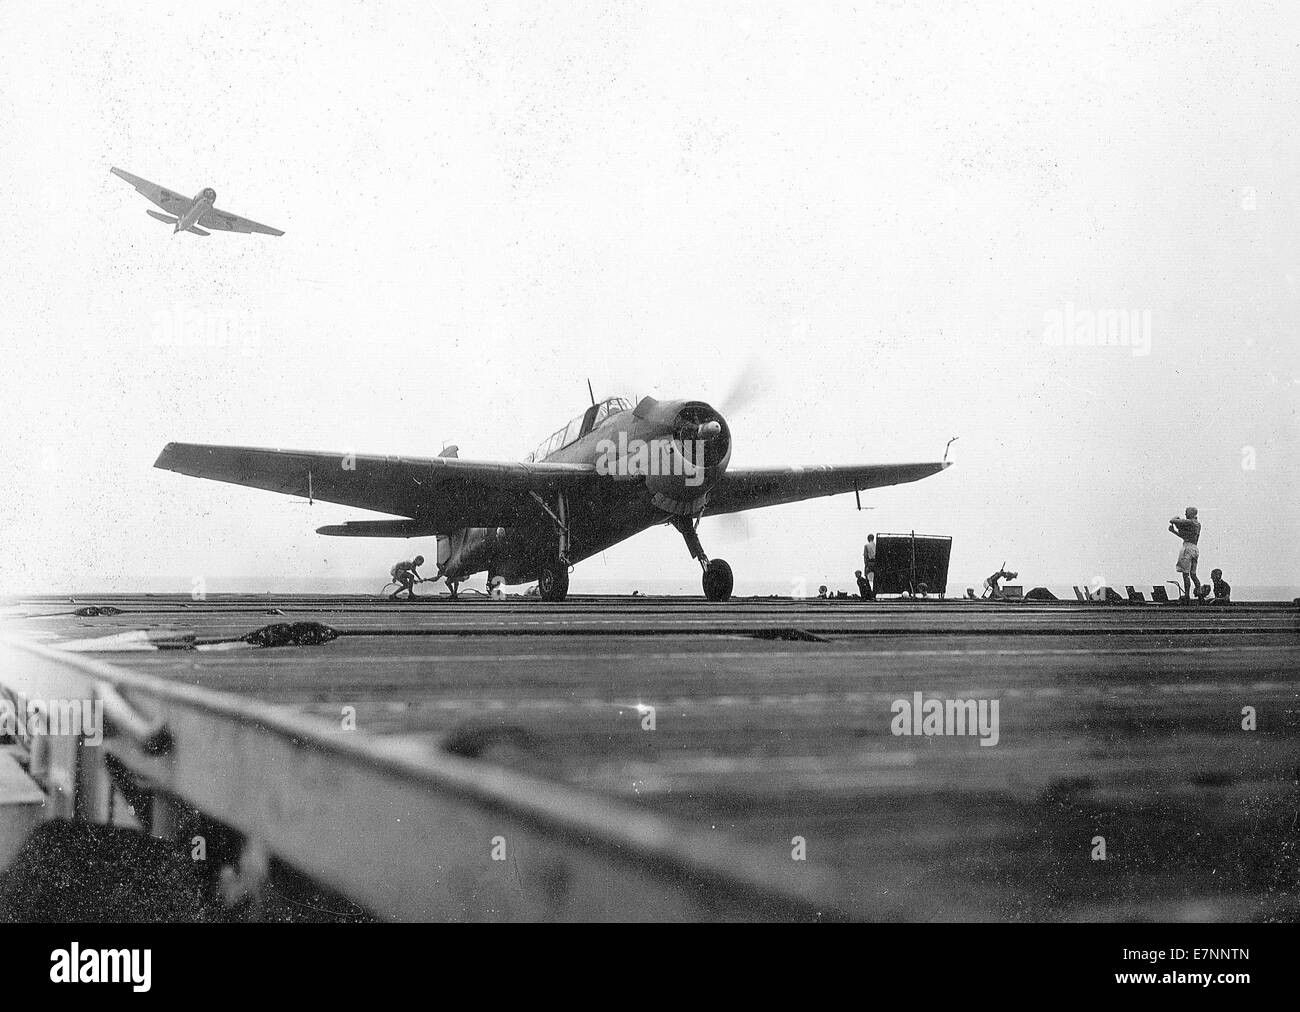 Royal Navy Grumman Avenger Flugzeug landet auf dem Flugdeck eines Trägers während WW11 Stockfoto